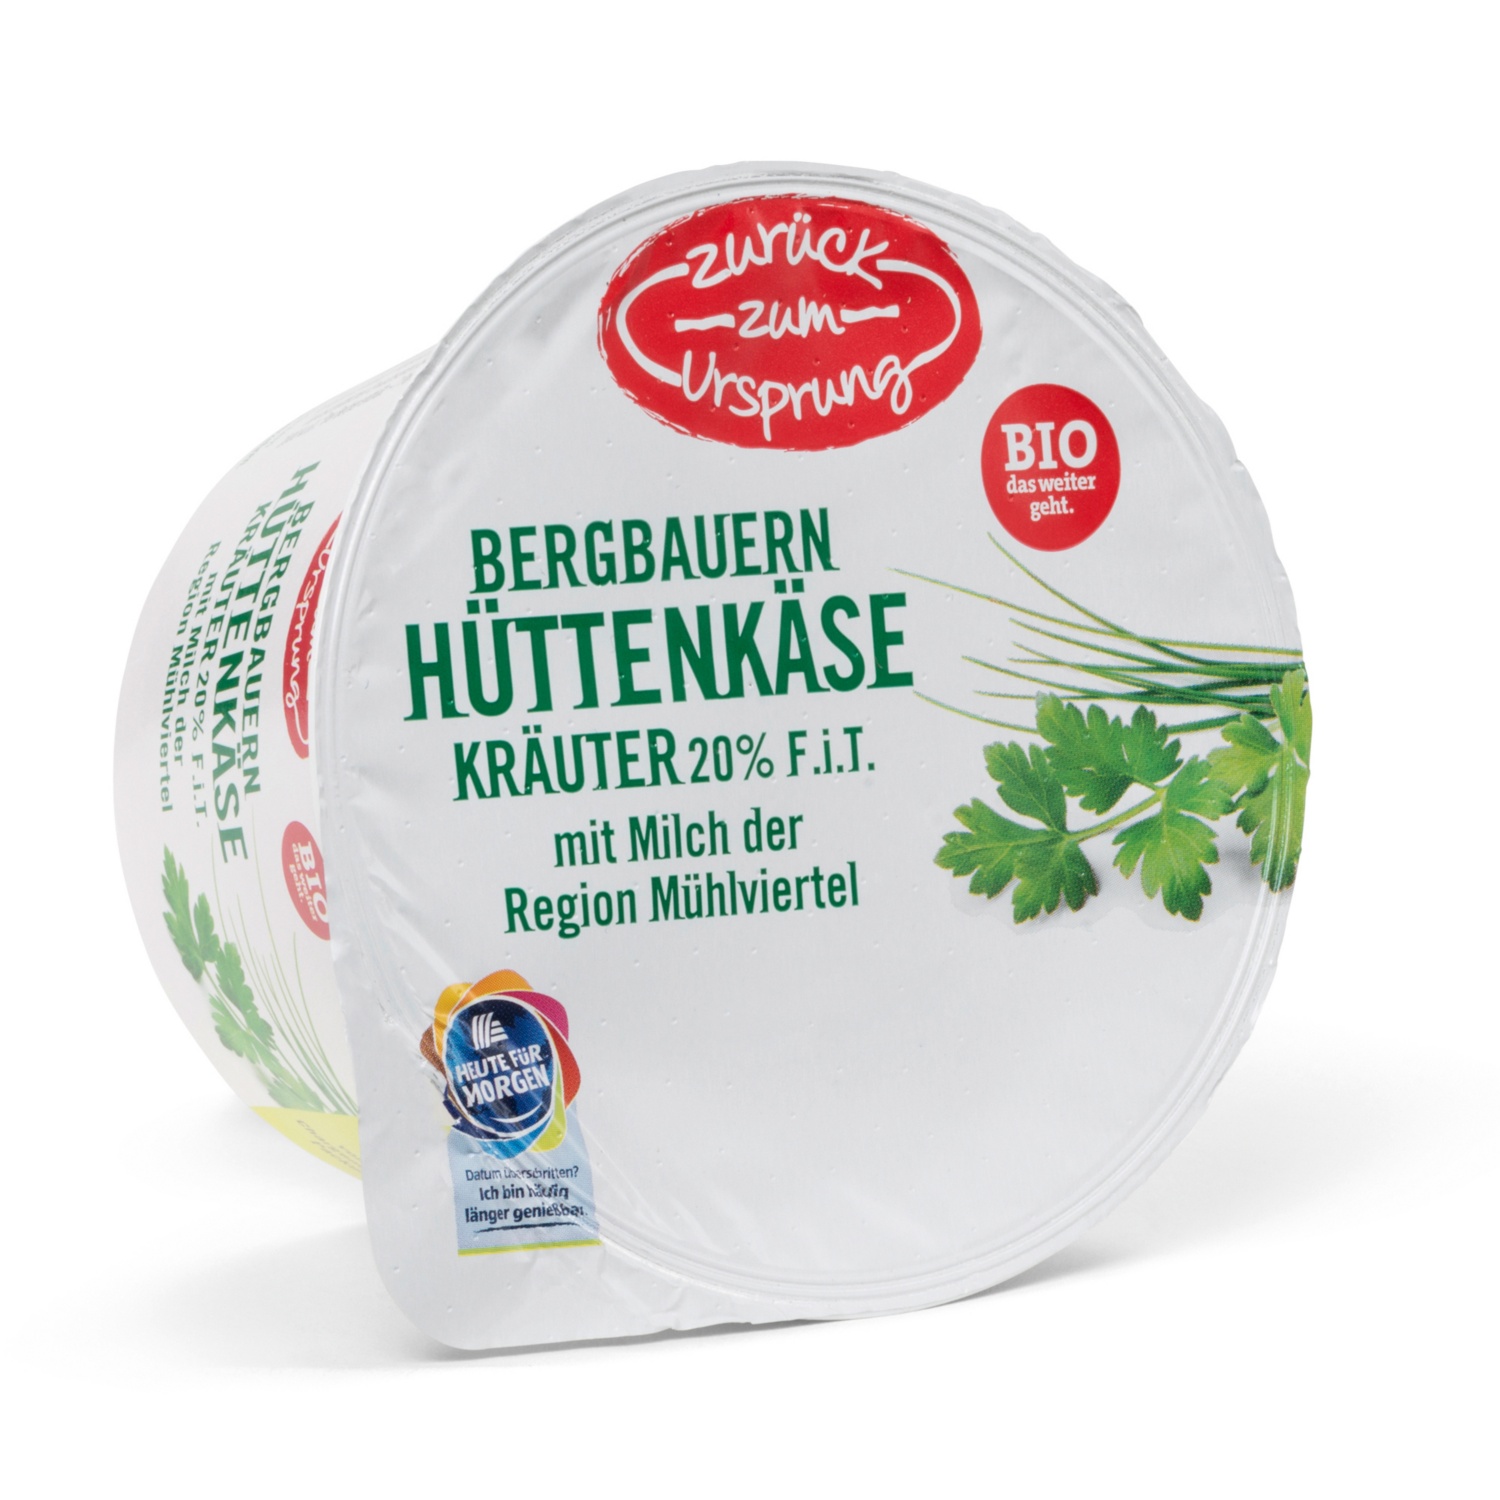 ZURÜCK ZUM URSPRUNG BIO-Bergbauern Hüttenkäse, Kräuter 20% F.i.T.